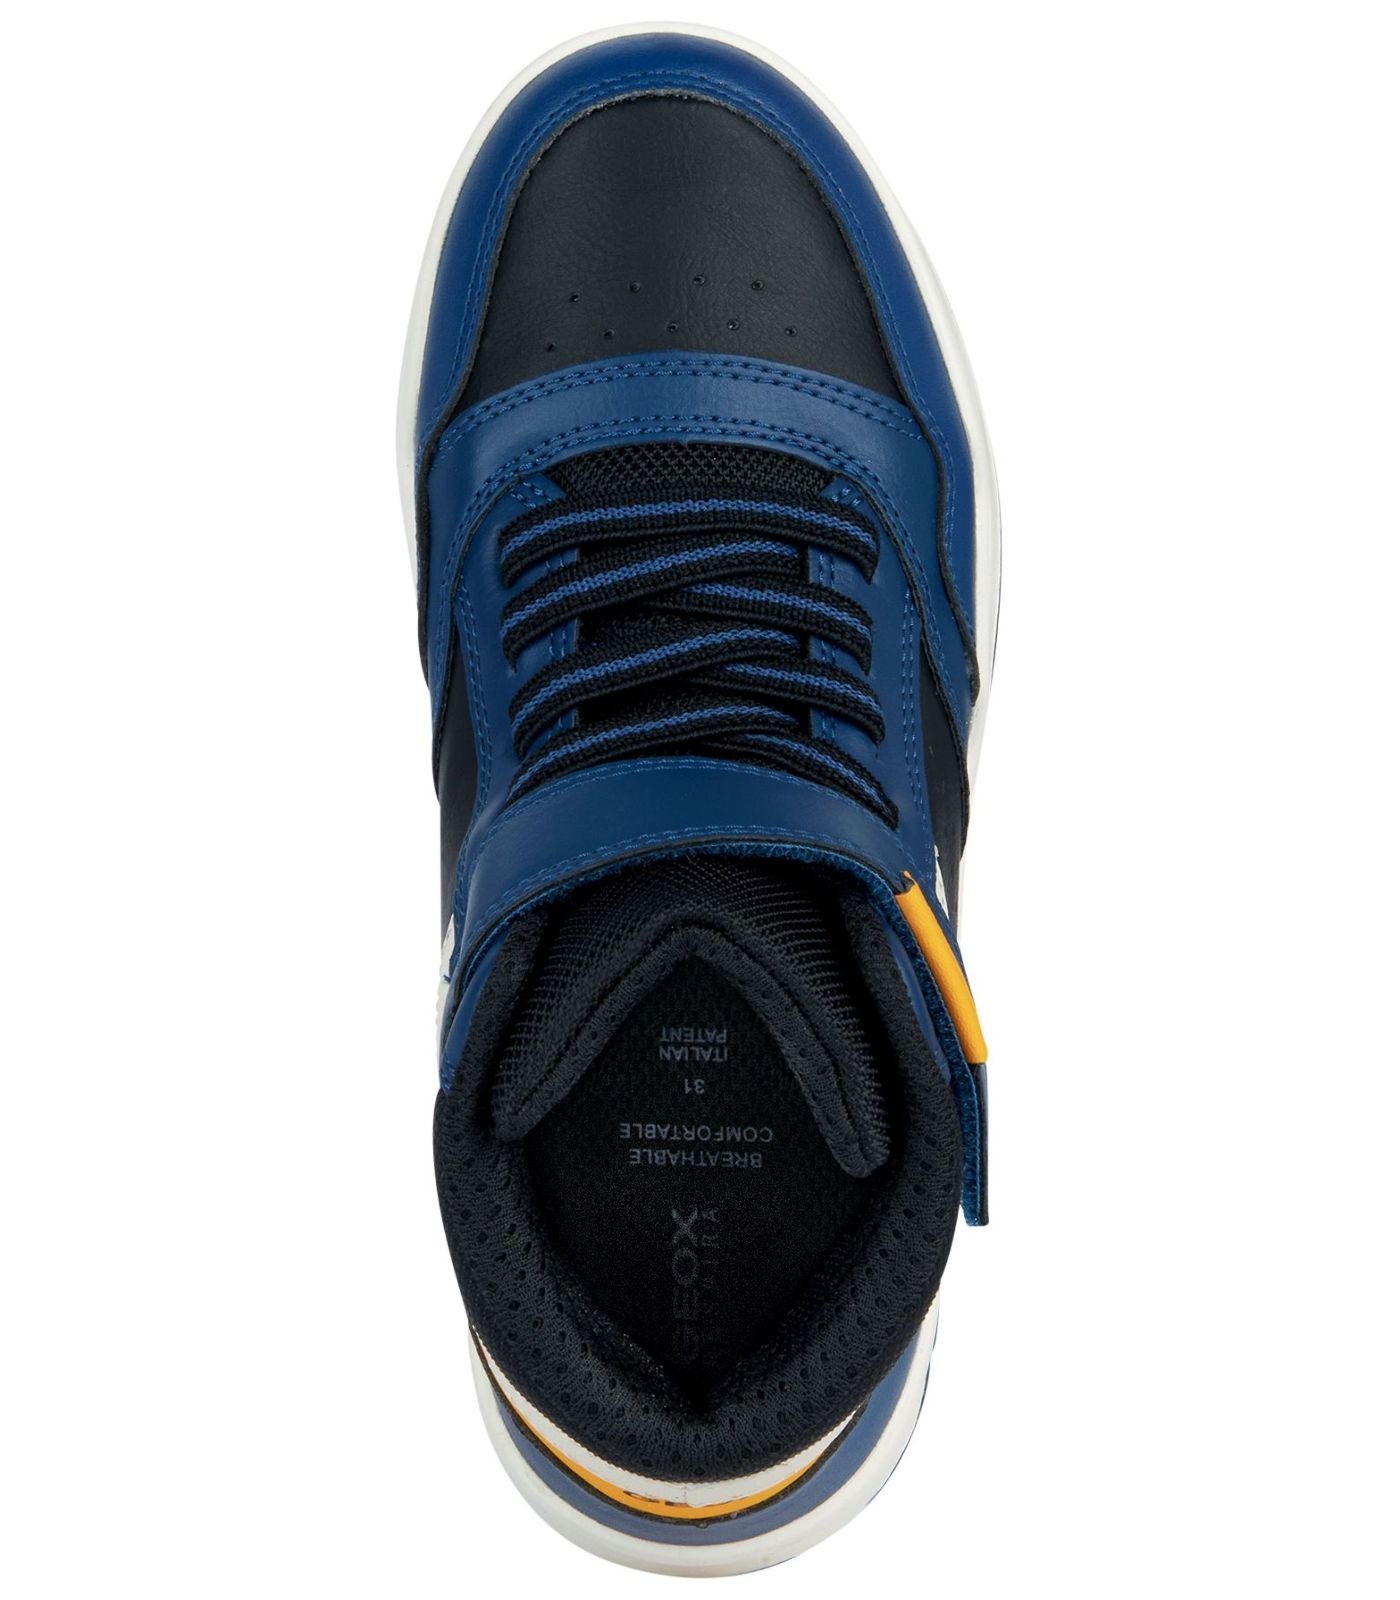 Lederimitat/Textil Geox Sneaker Blau Sneaker Gelb